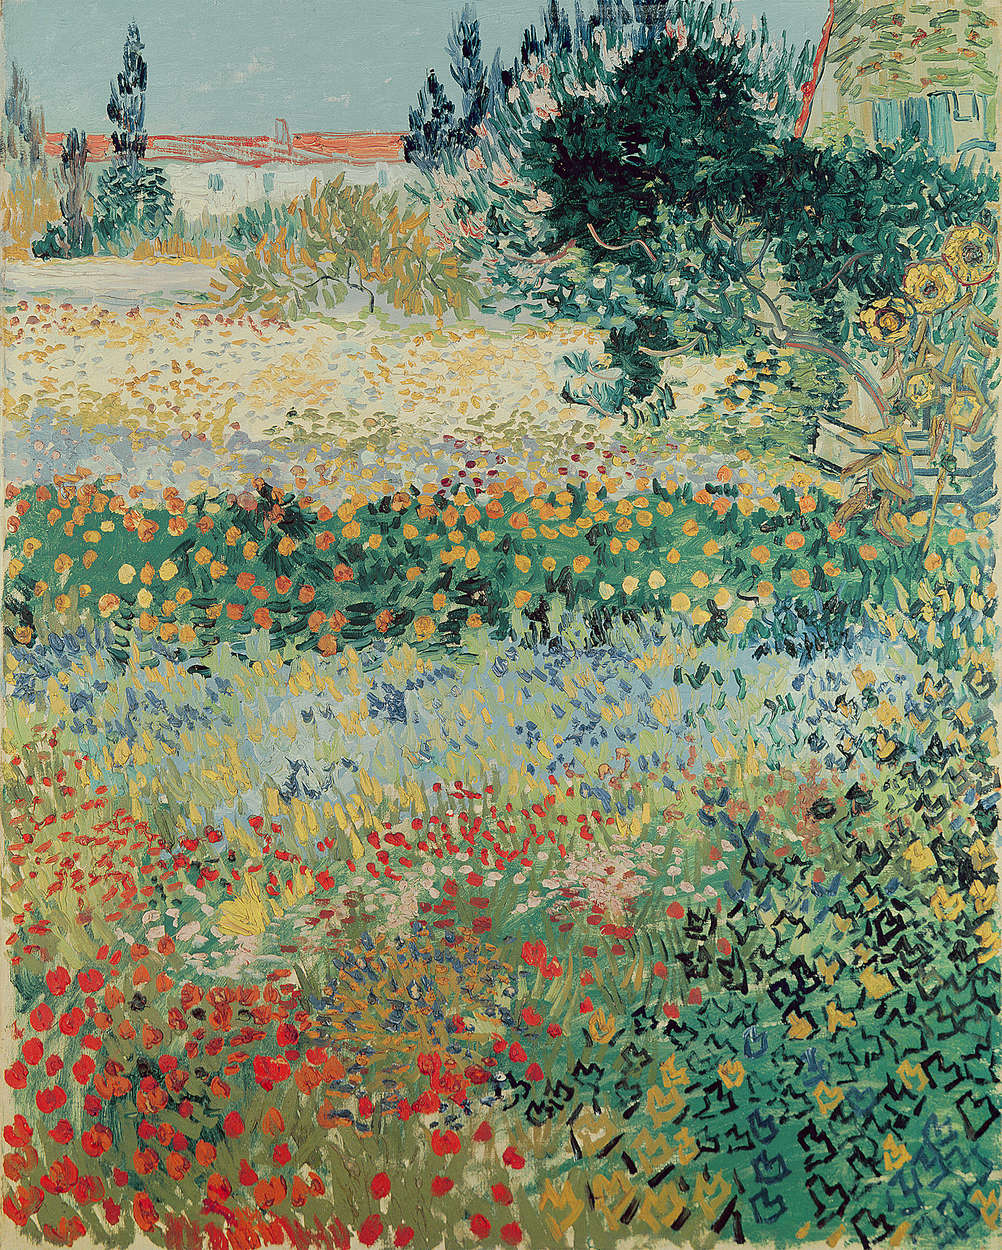             Bloeiende tuin met pad" muurschildering van Vincent van Gogh
        